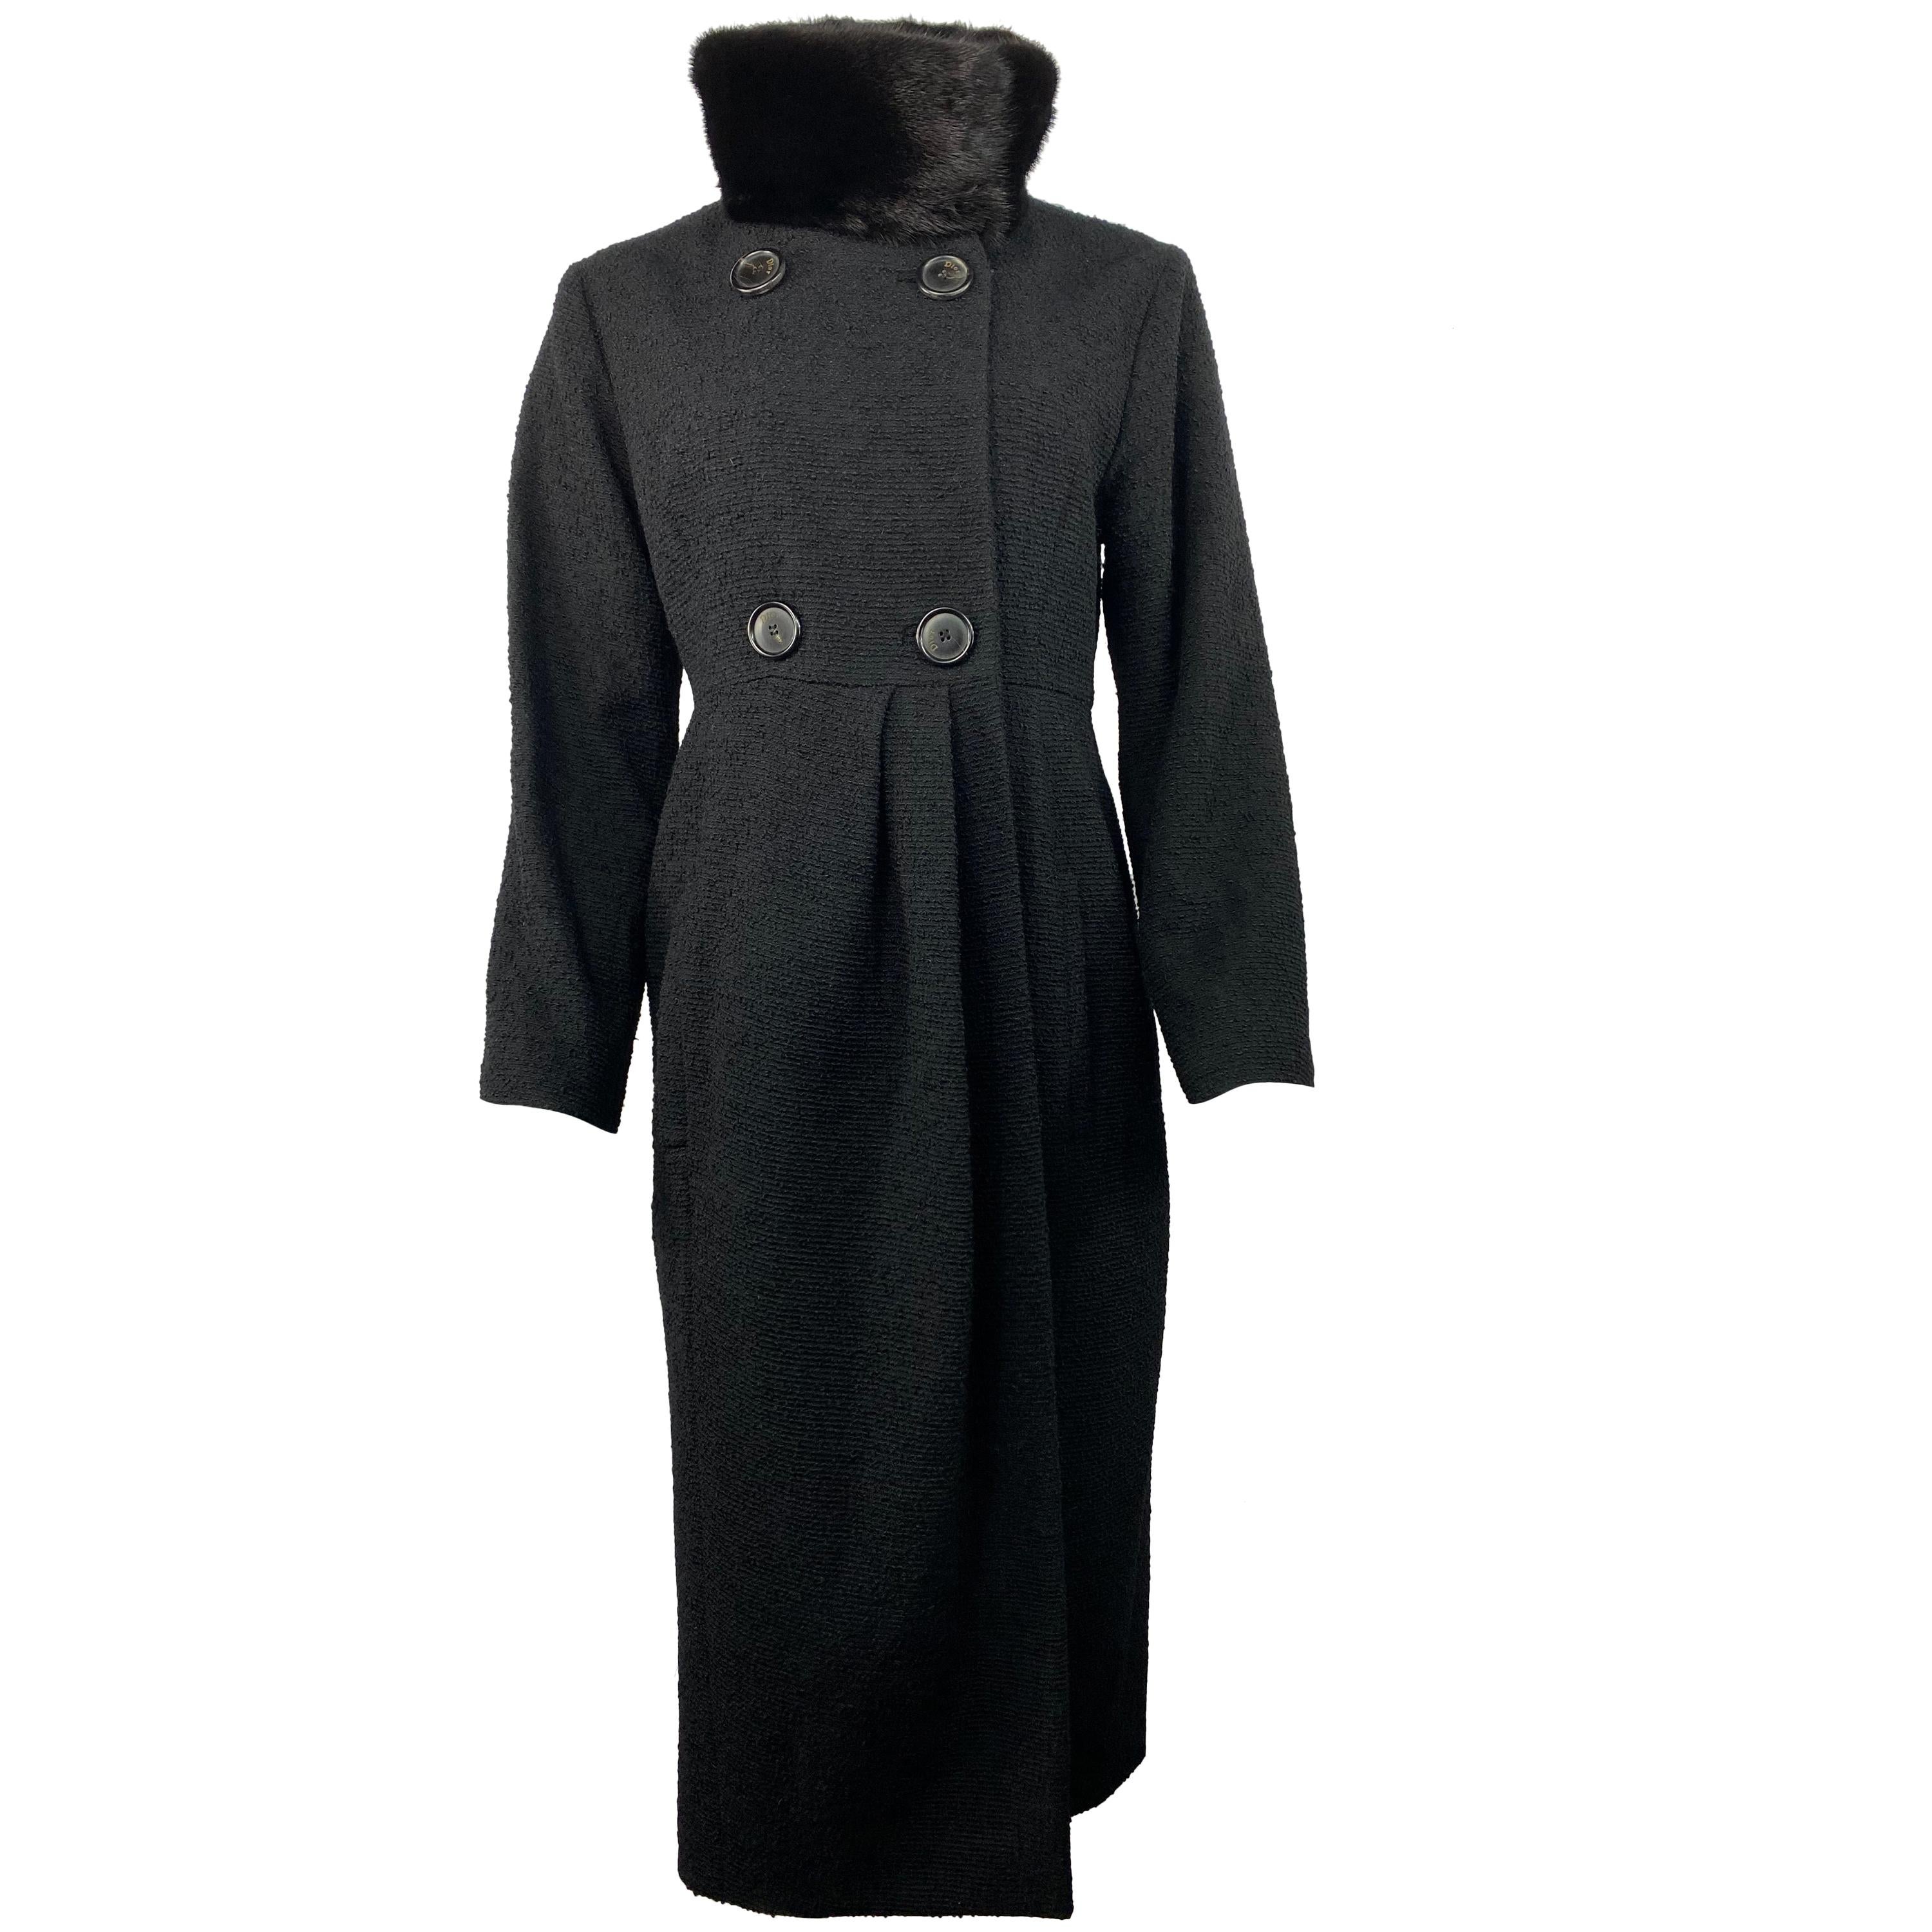 Christian Dior - Veste manteau en tweed de laine noir et fourrure, taille 40